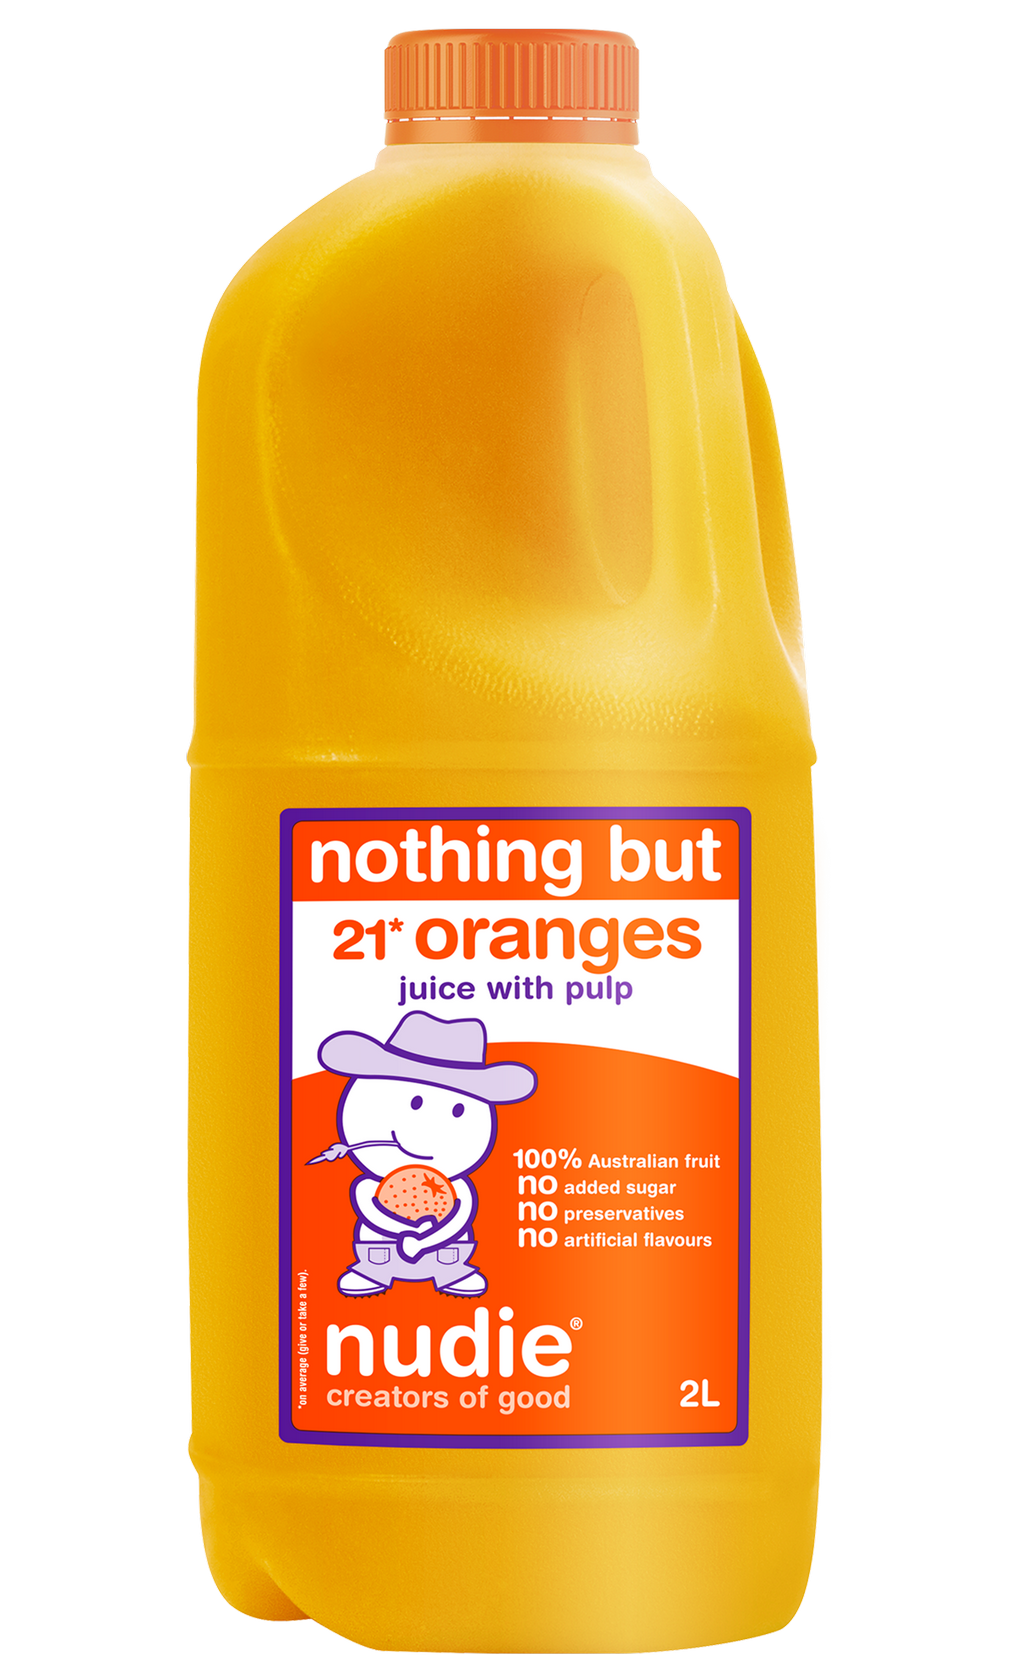 Nudie 2L Orange Juice With Pulp